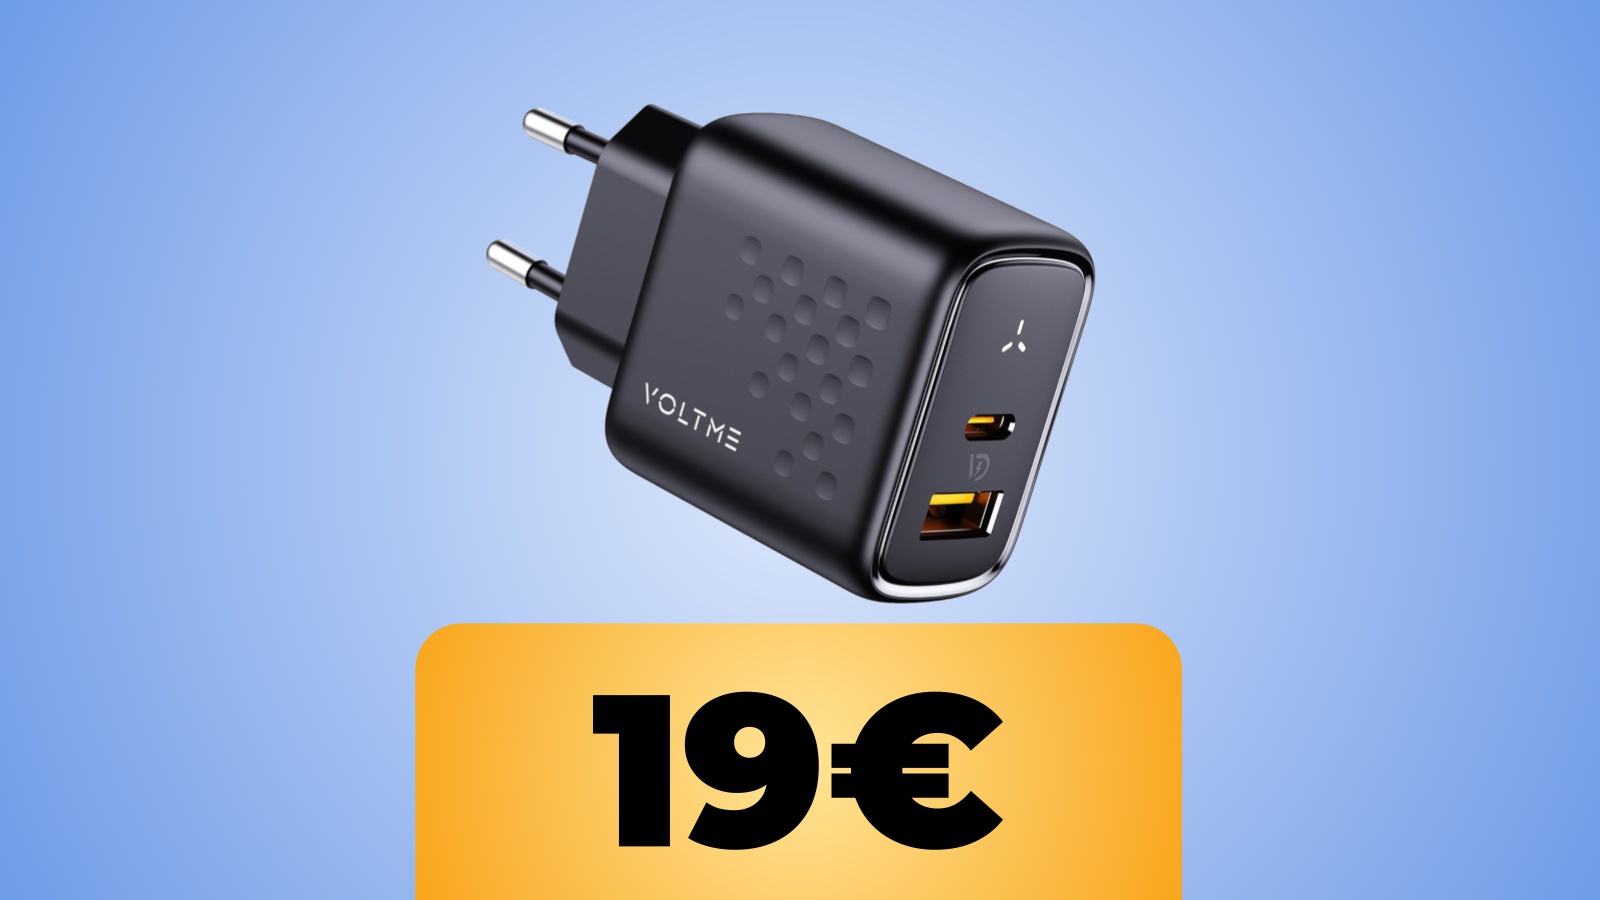 Caricatore VOLTME con USB-C e USB-A in sconto al prezzo minimo con coupon su Amazon